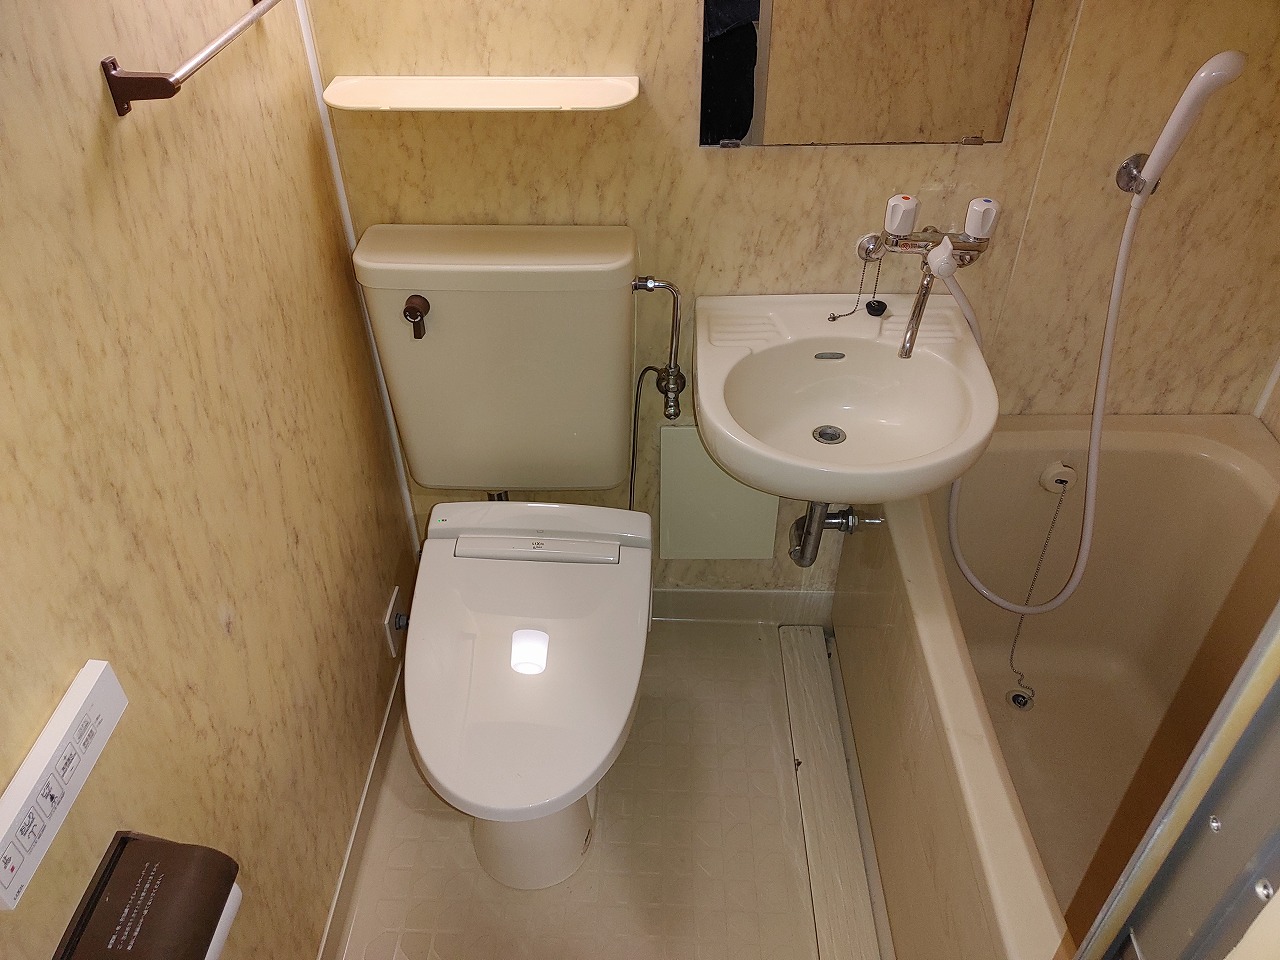 ホテル 大家さん向けの水道設備屋さん ユニットバスにウォシュレットを 東京都ホテル旅館組合指定商社